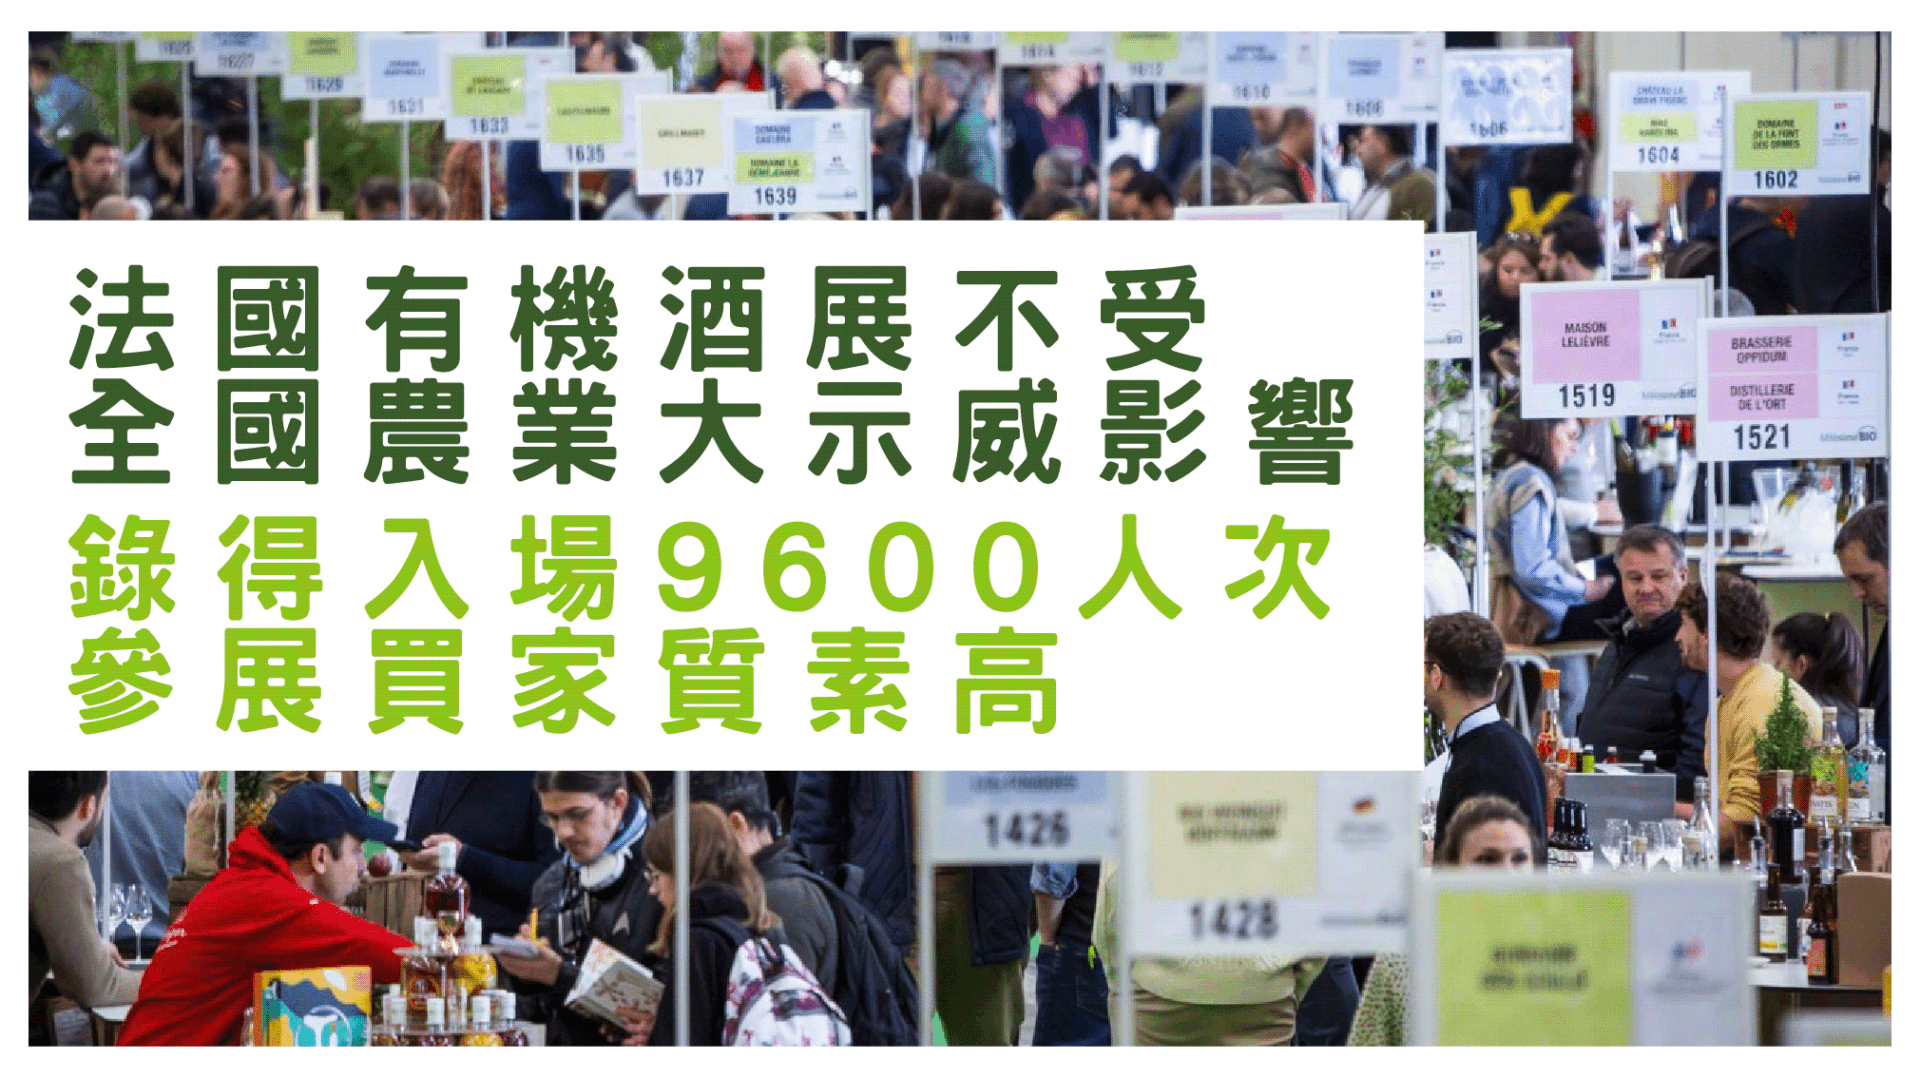 法國有機酒展不受全國農業大示威影響 錄得入場9600人次 參展買家質素高 - WineNow HK